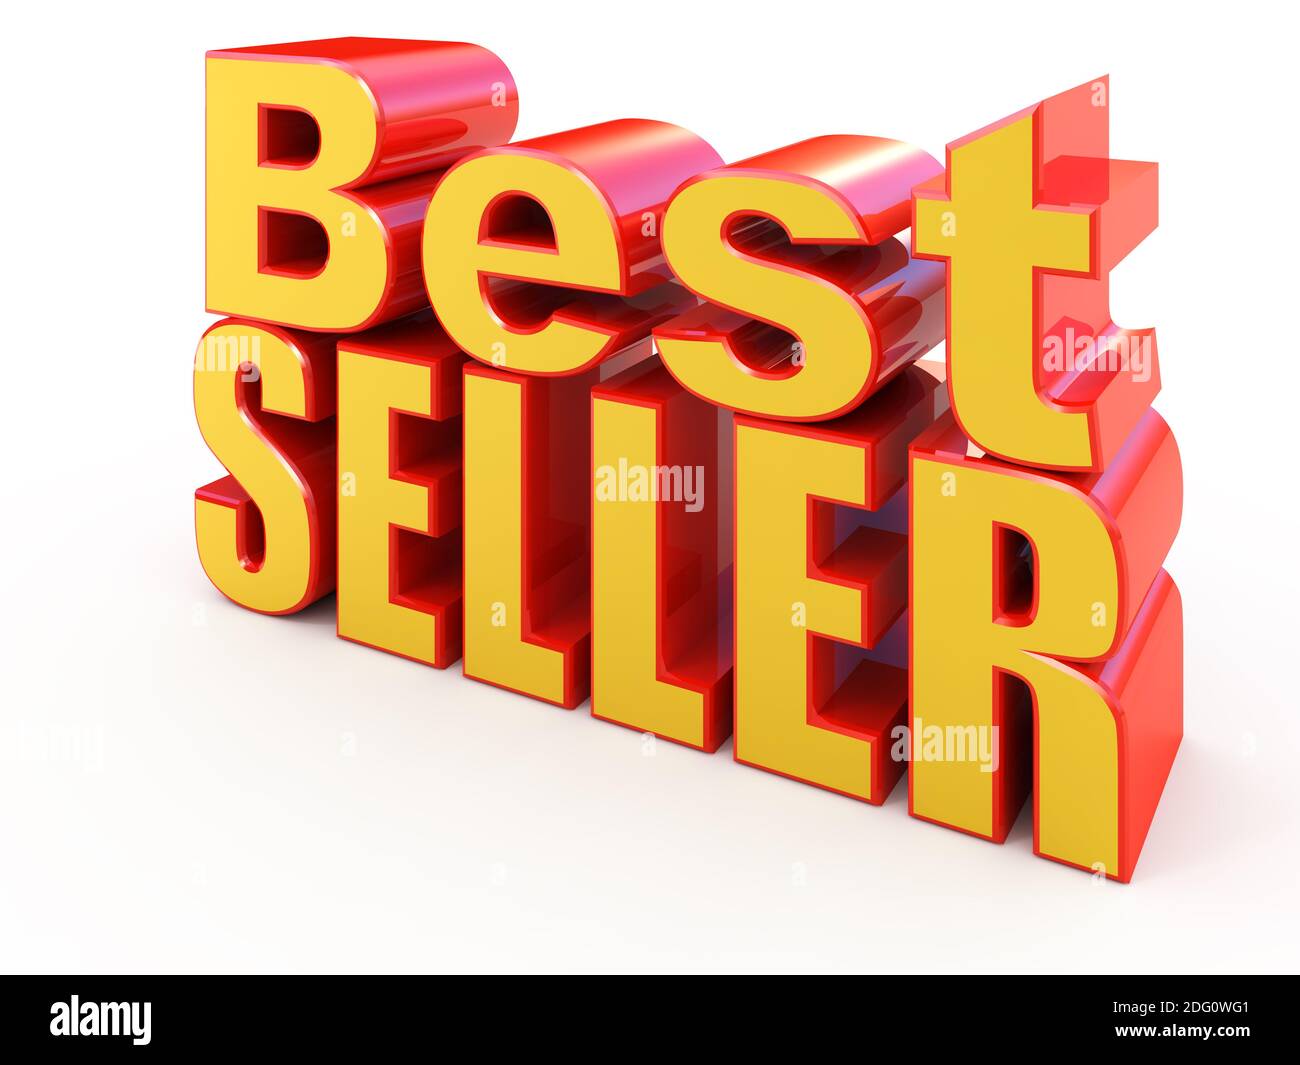 Best-seller segno isolato su bianco Foto Stock